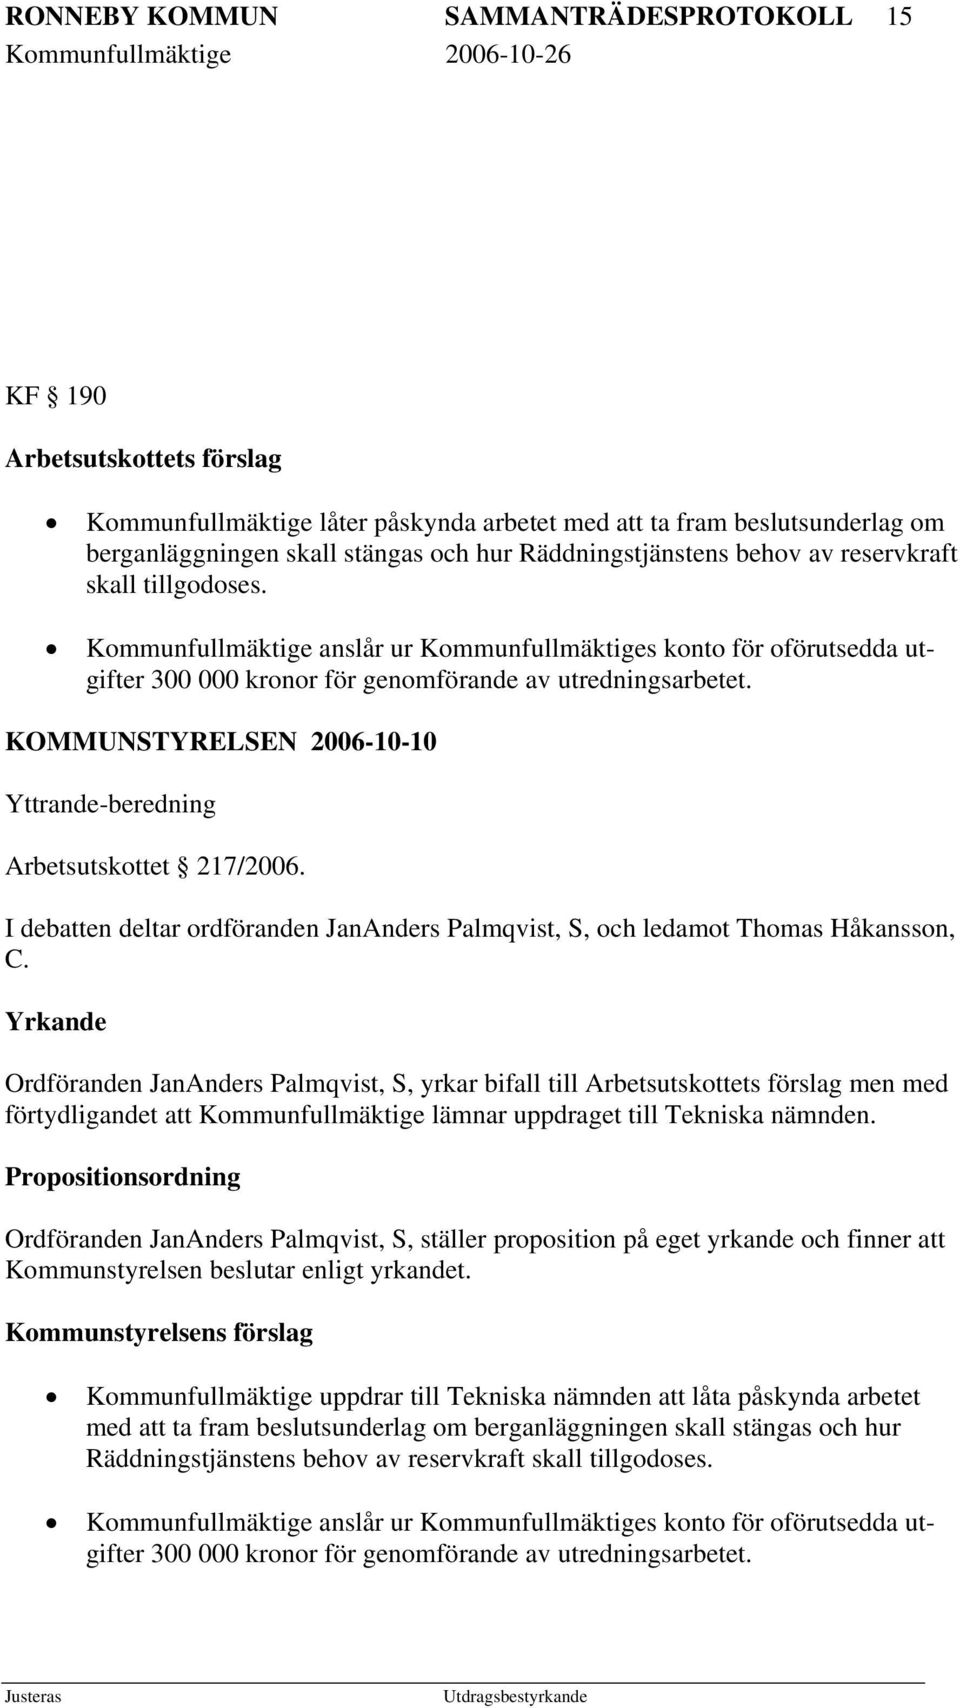 KOMMUNSTYRELSEN 2006-10-10 Yttrande-beredning Arbetsutskottet 217/2006. I debatten deltar ordföranden JanAnders Palmqvist, S, och ledamot Thomas Håkansson, C.